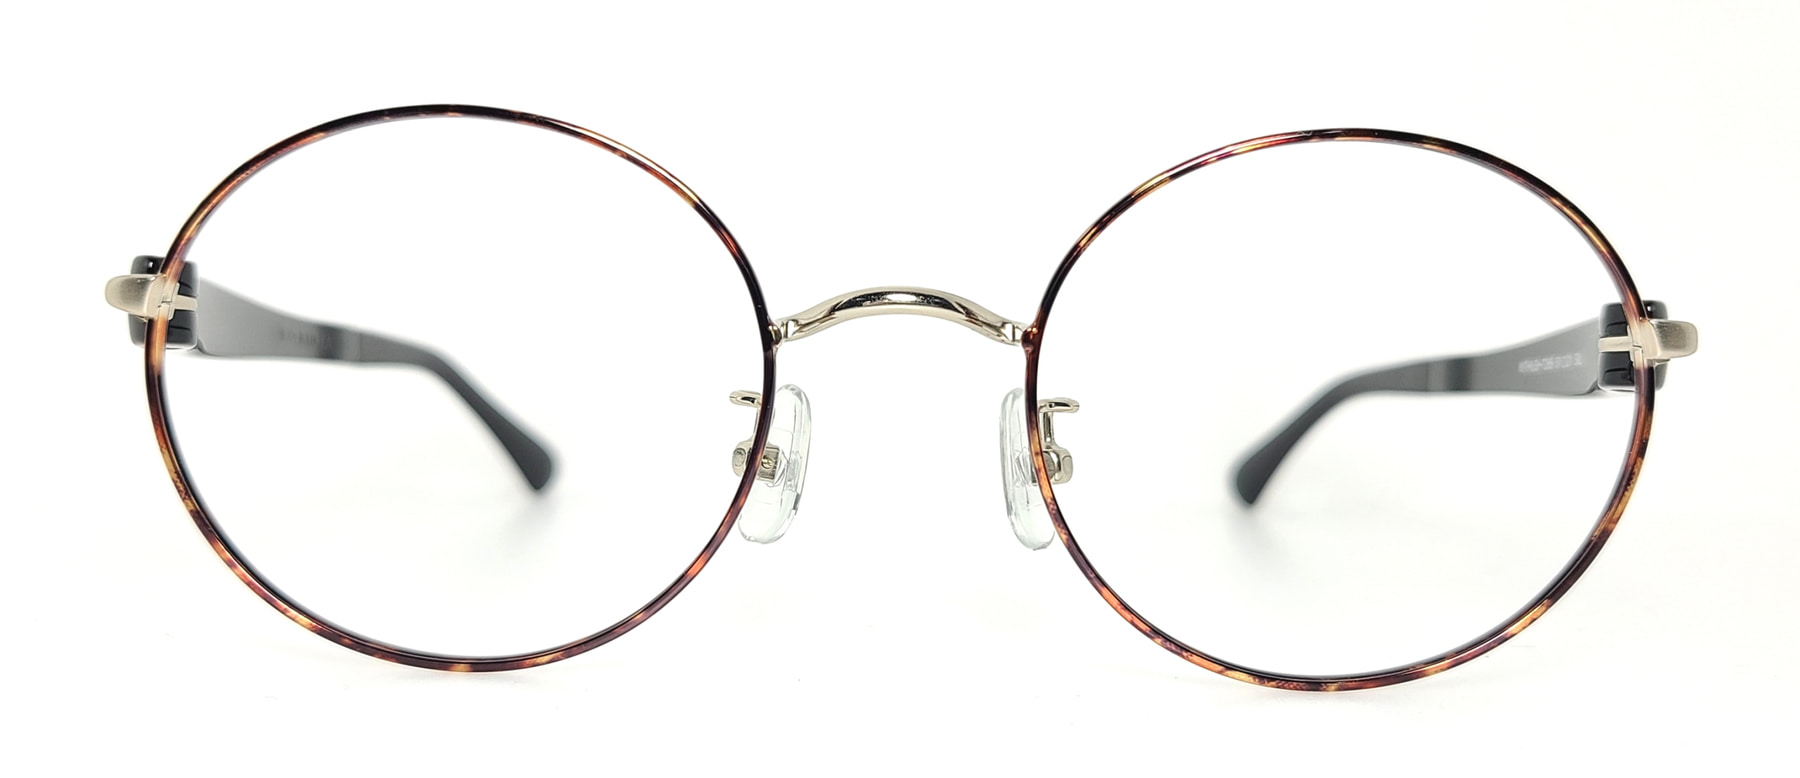 WITHUS-7265, Korean glasses, sunglasses, eyeglasses, glasses